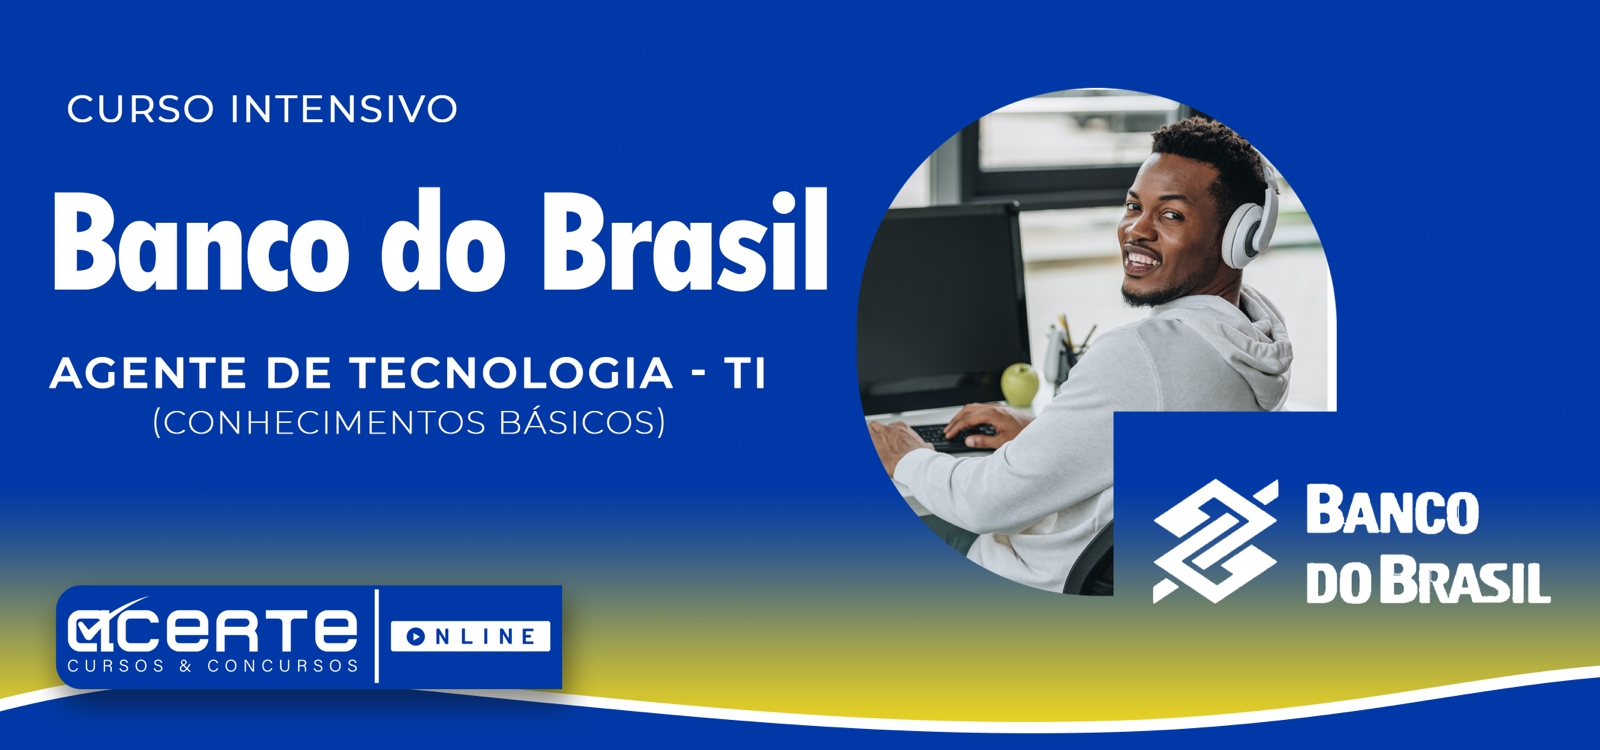 Banco do Brasil - Escriturário - Agente de Tecnologia - Conhecimentos Gerais - ONLINE - Edital Publicado